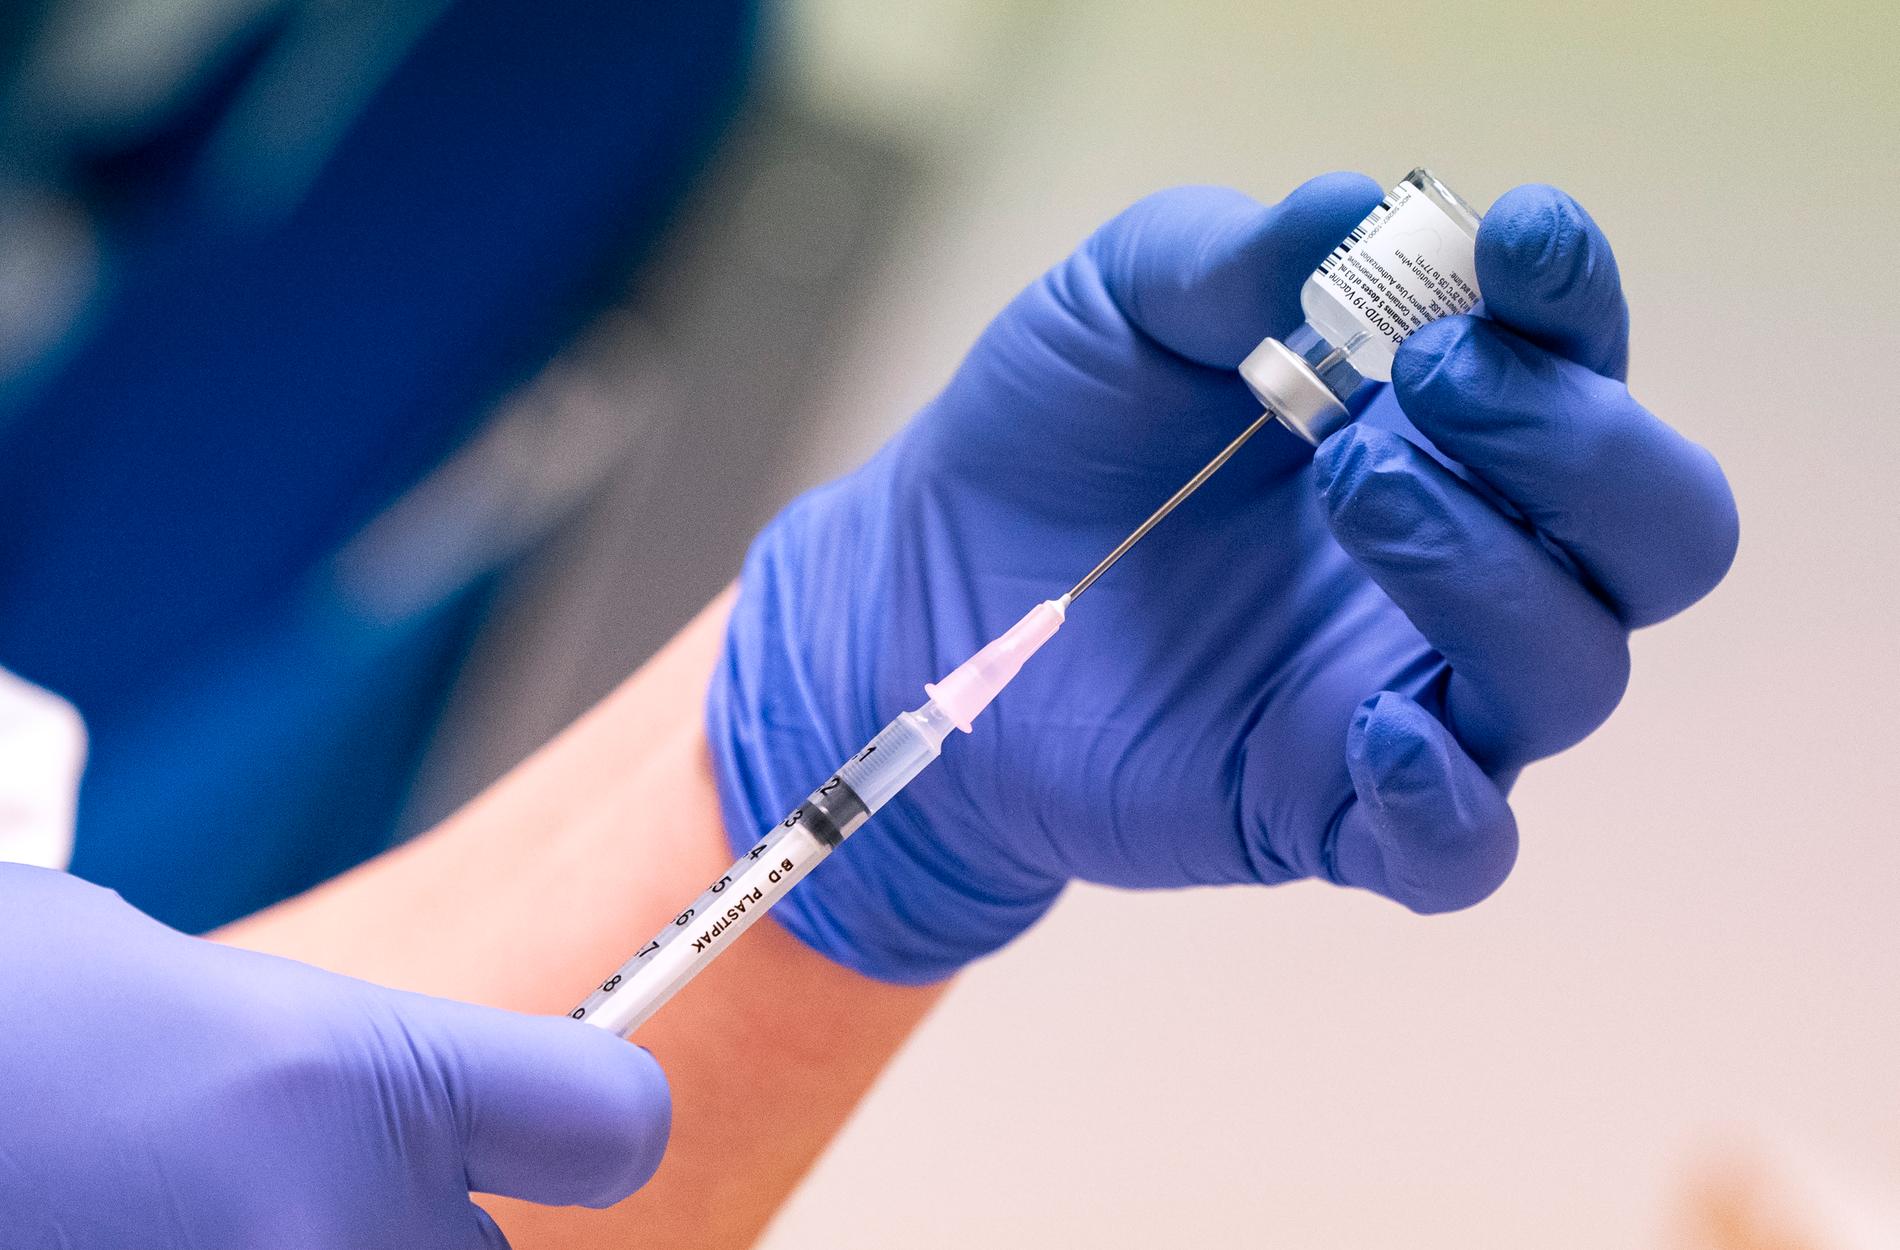 Om inte alla i världen får vaccinet finns det större risk att viruset kan mutera, förklarar experterna.